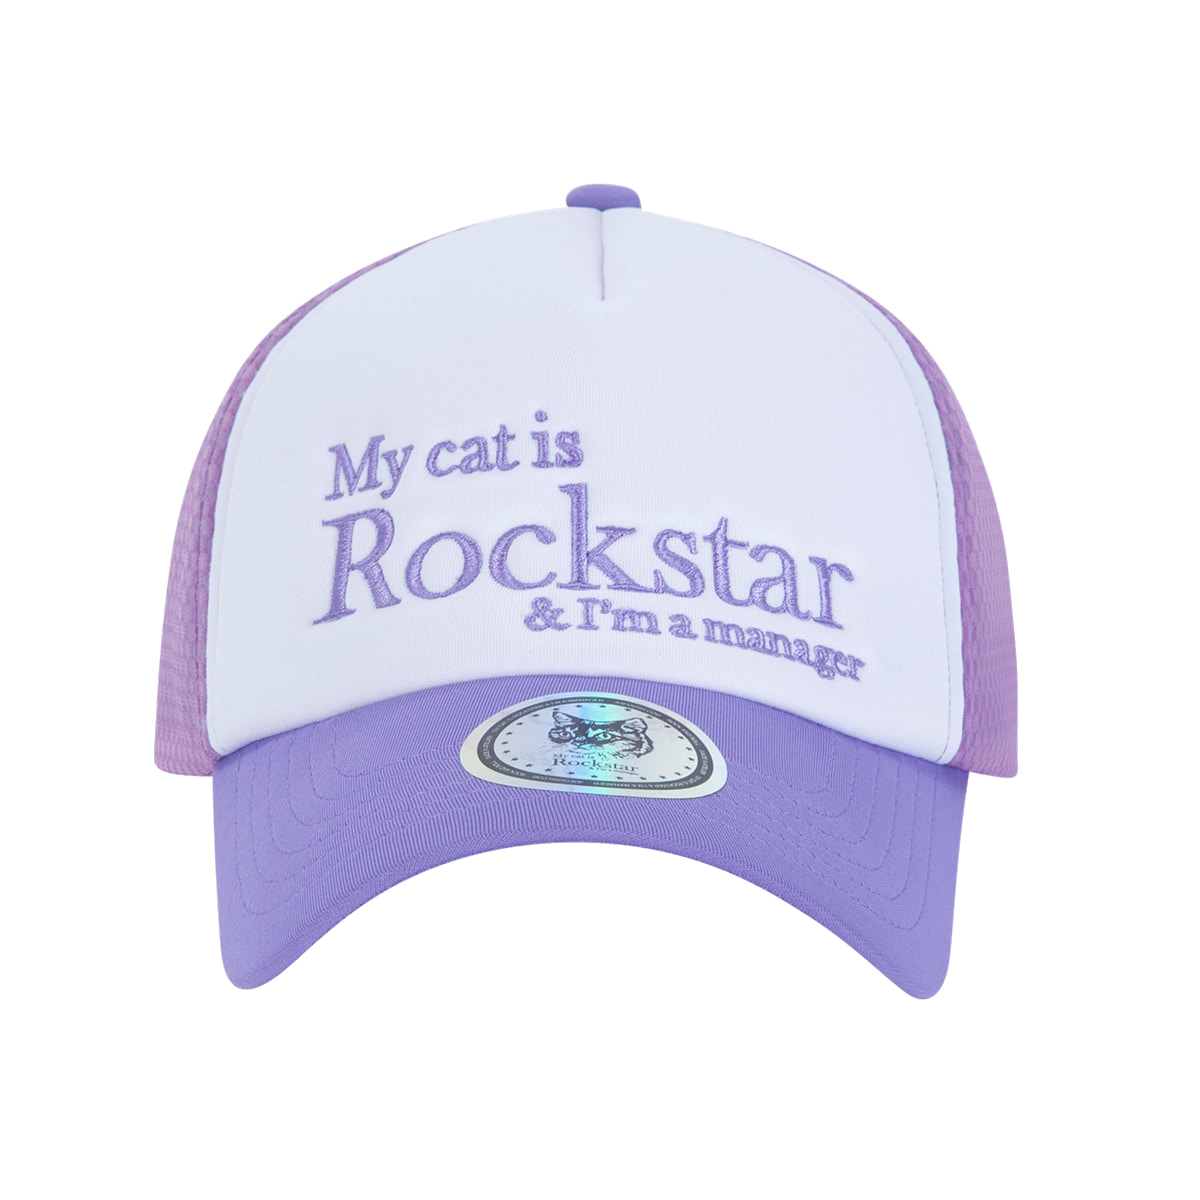 Rockstar cat Mesh cap (Violet)